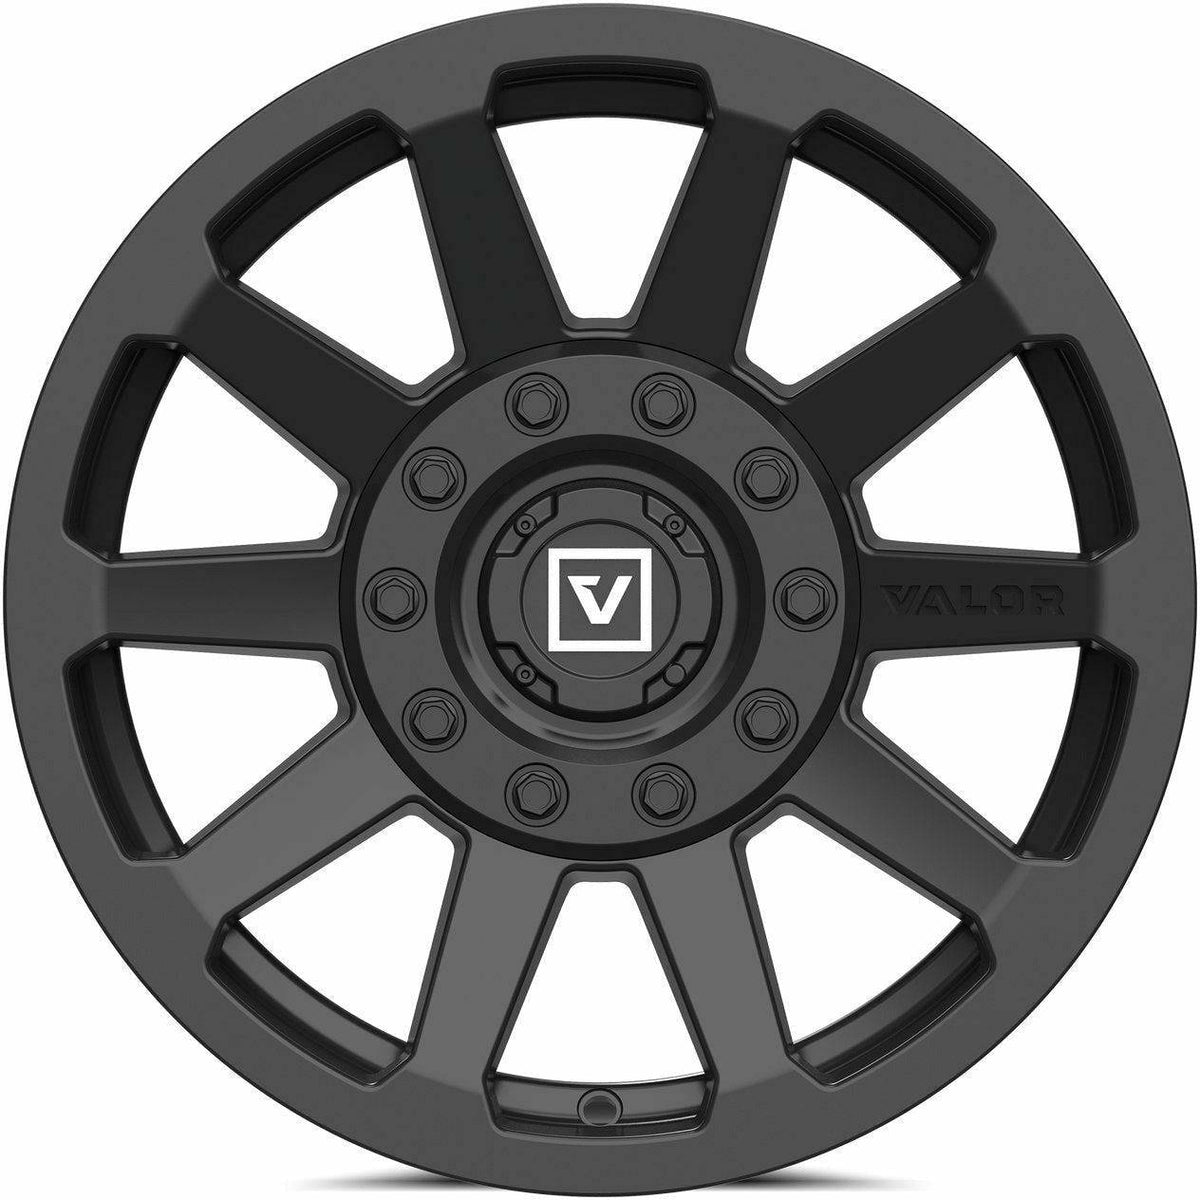 Valor V02 UTV Wheel